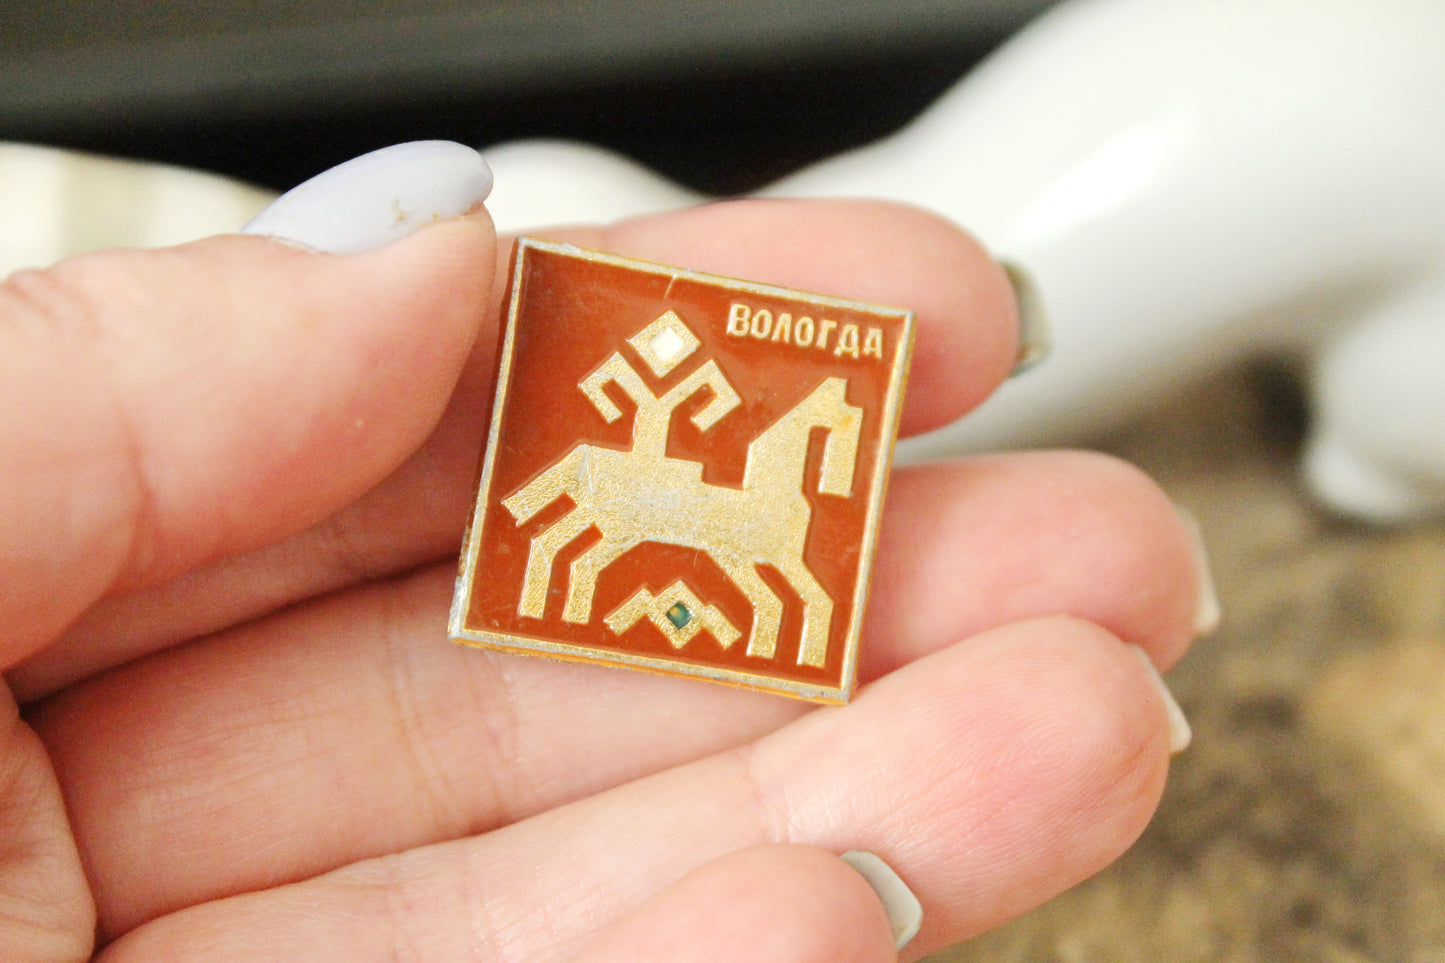 Vintage soviet USSR pin badge - Vologda - USSR pin - vintage soviet badge - 1970s